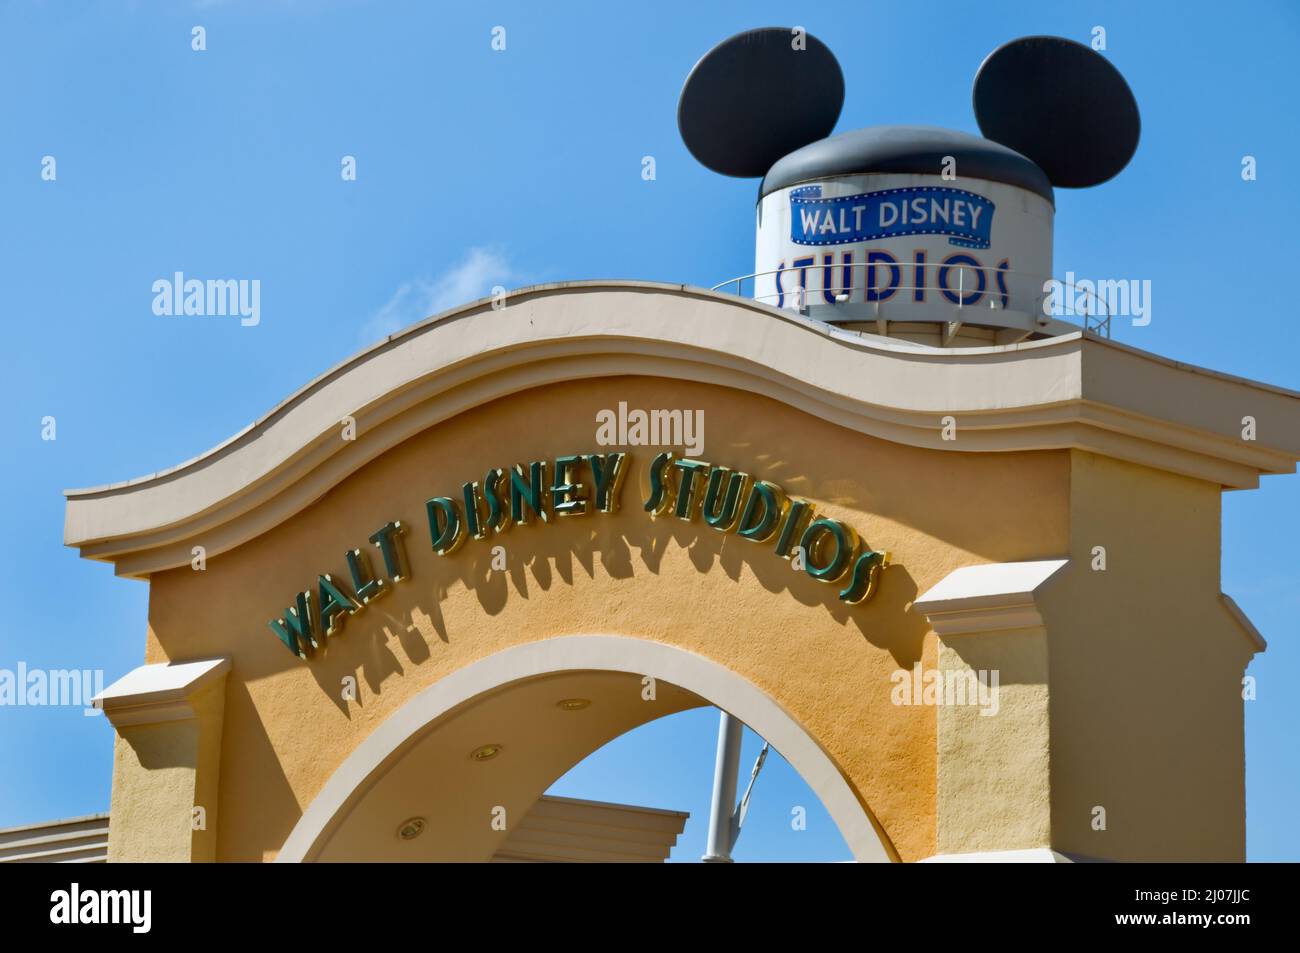 Paris, Frankreich, Themenparks, Disneyland Paris, Eingangstor, Walt Disney Studios, Detail, Schild, mit Wasserturm und Mickey Mouse Ohren Dekoration Stockfoto